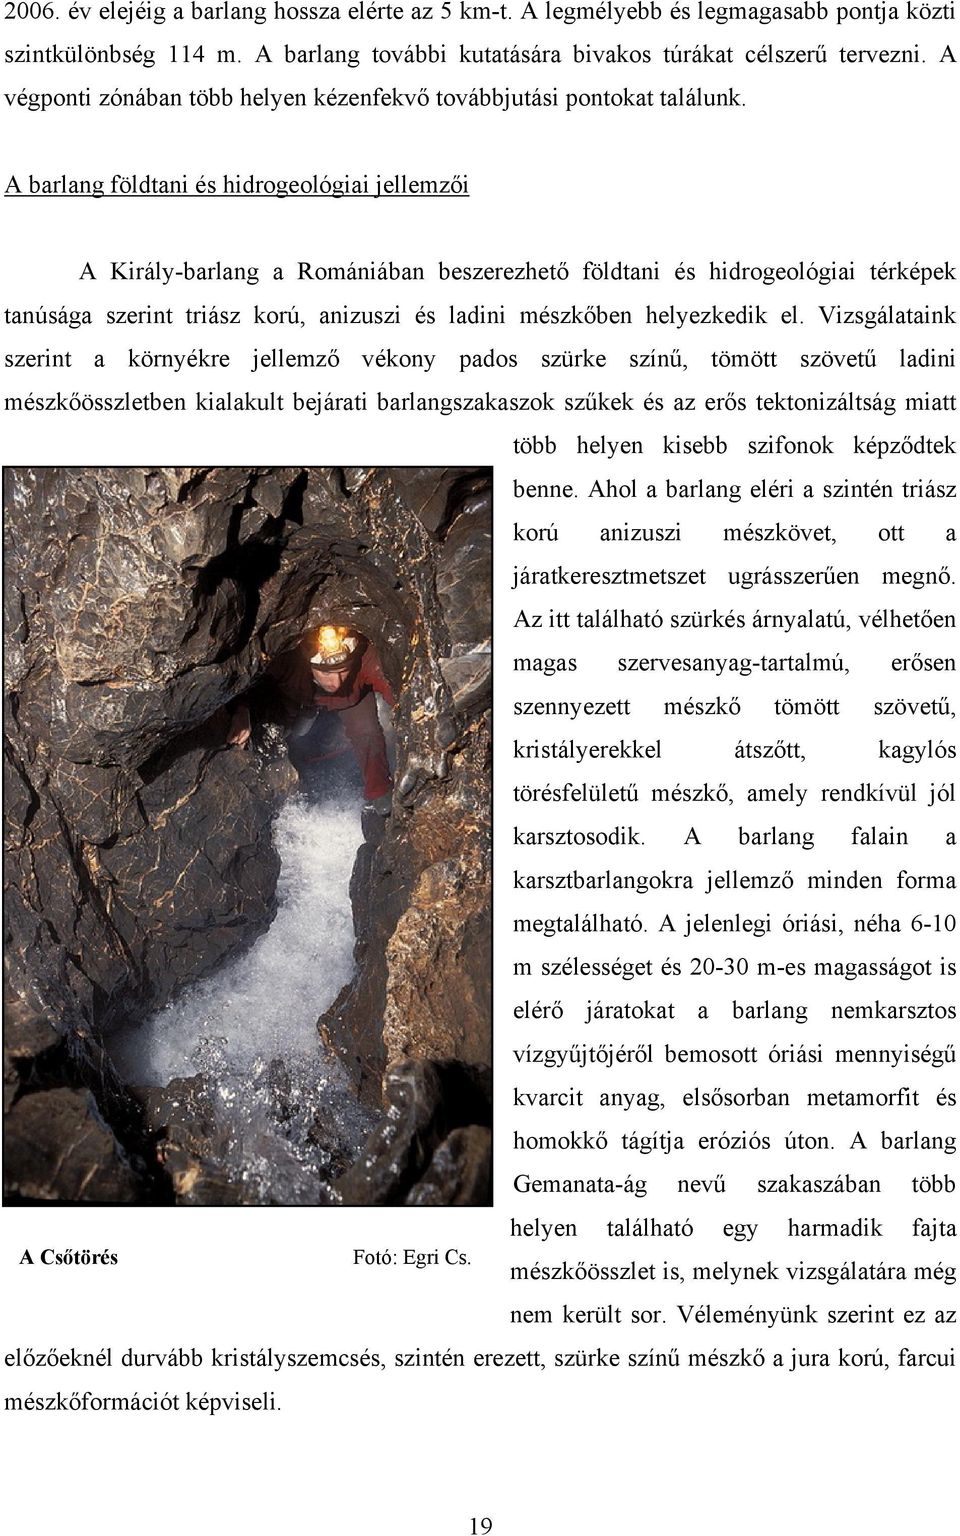 A barlang földtani és hidrogeológiai jellemzői A Király-barlang a Romániában beszerezhető földtani és hidrogeológiai térképek tanúsága szerint triász korú, anizuszi és ladini mészkőben helyezkedik el.